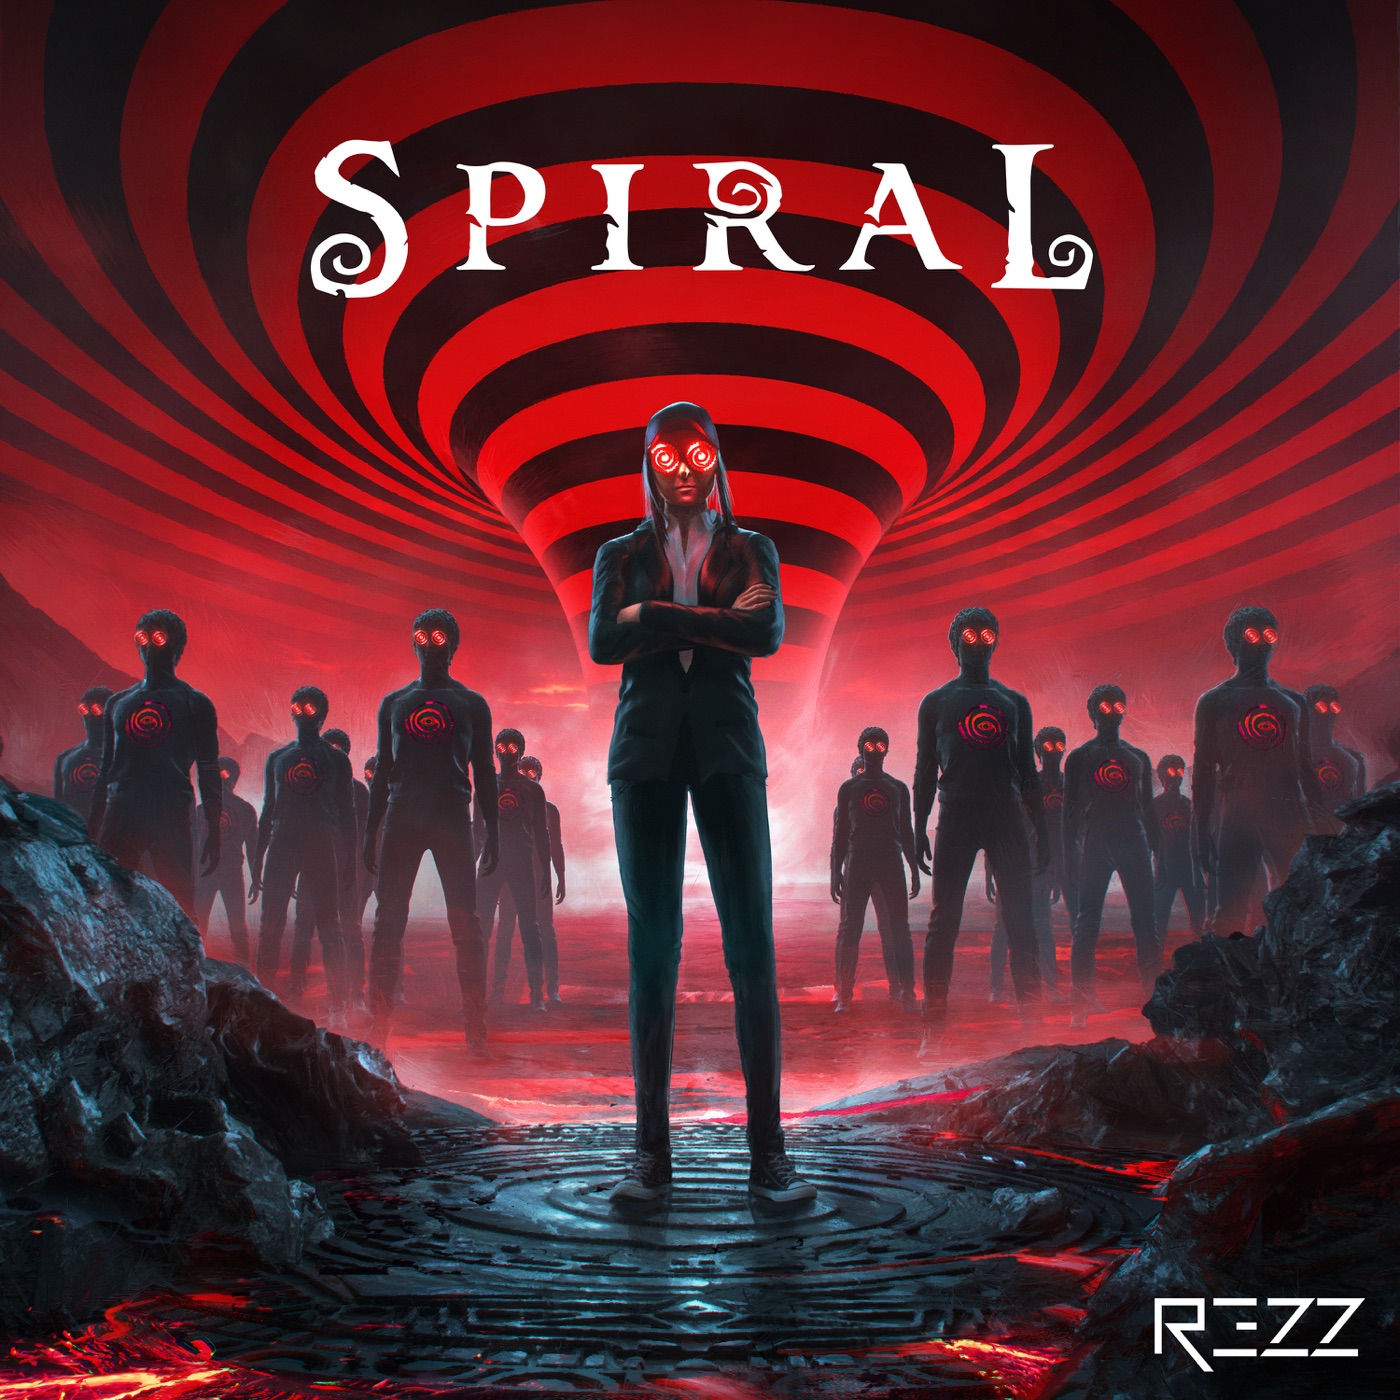 Spiral by Rezz